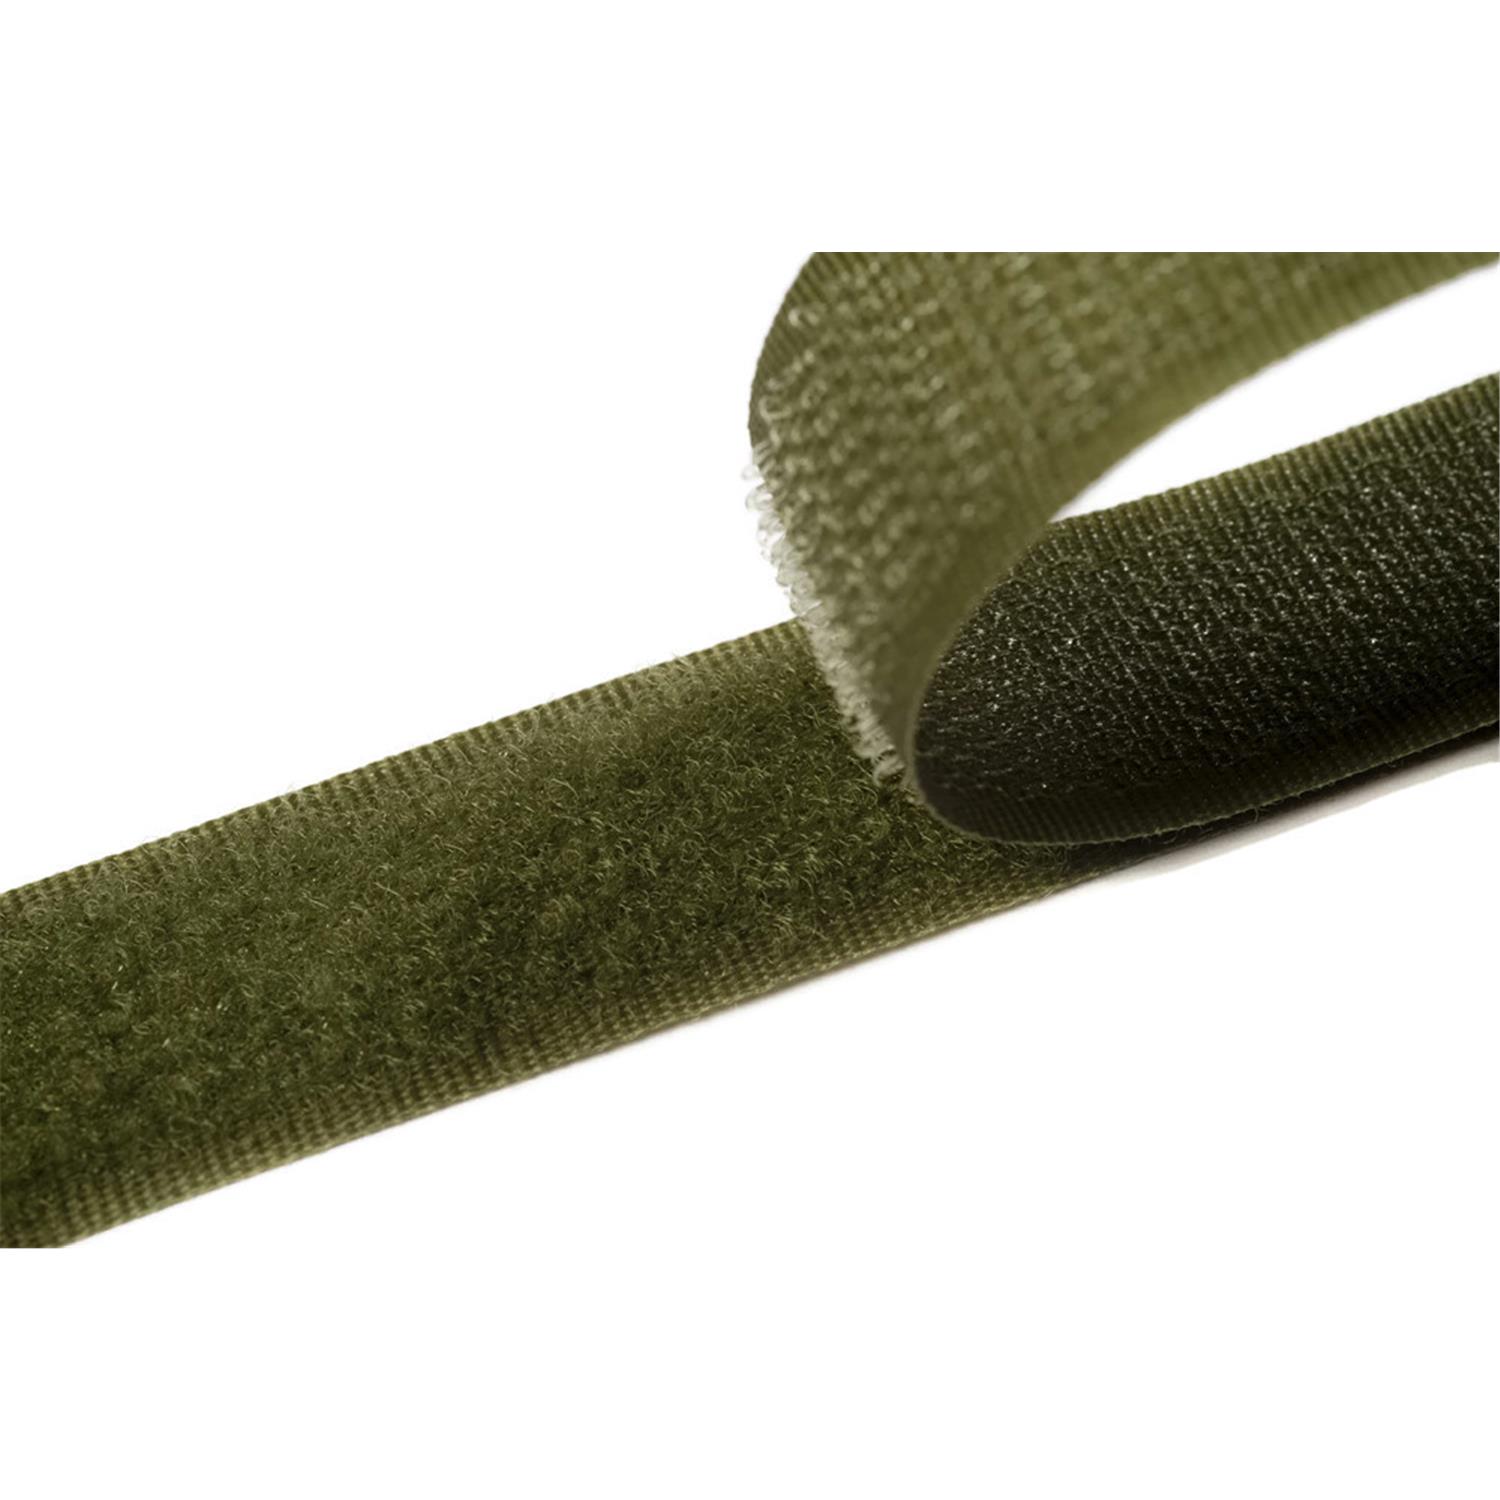 Klettband zum aufnähen, 25 mm, olivgrün #09 4 Meter